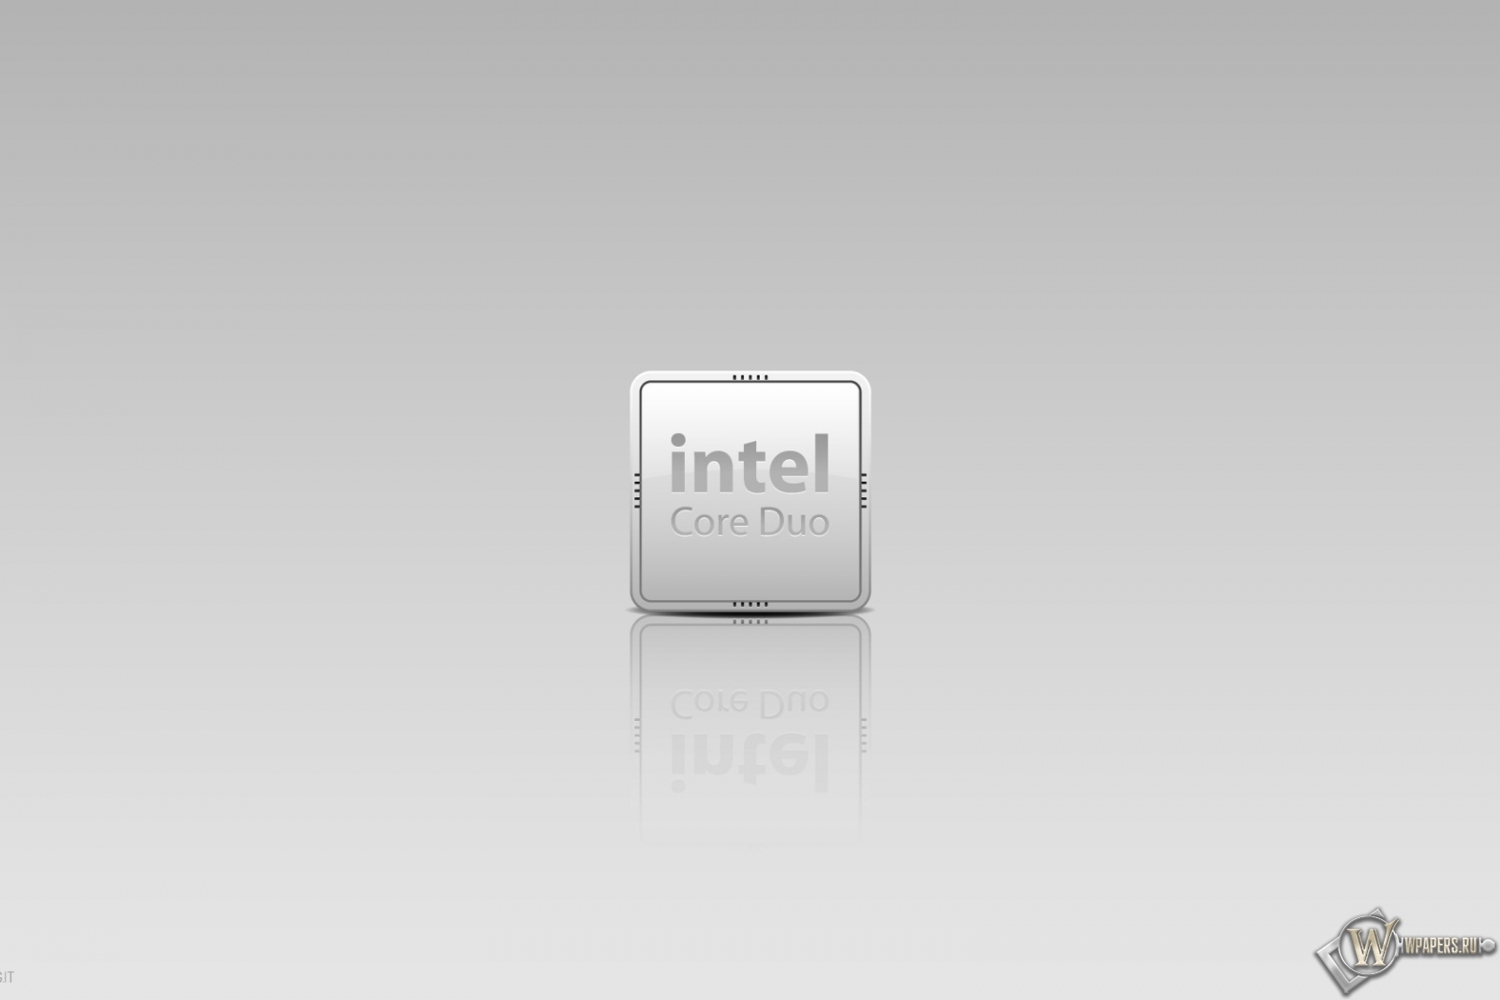 Intel 1500x1000